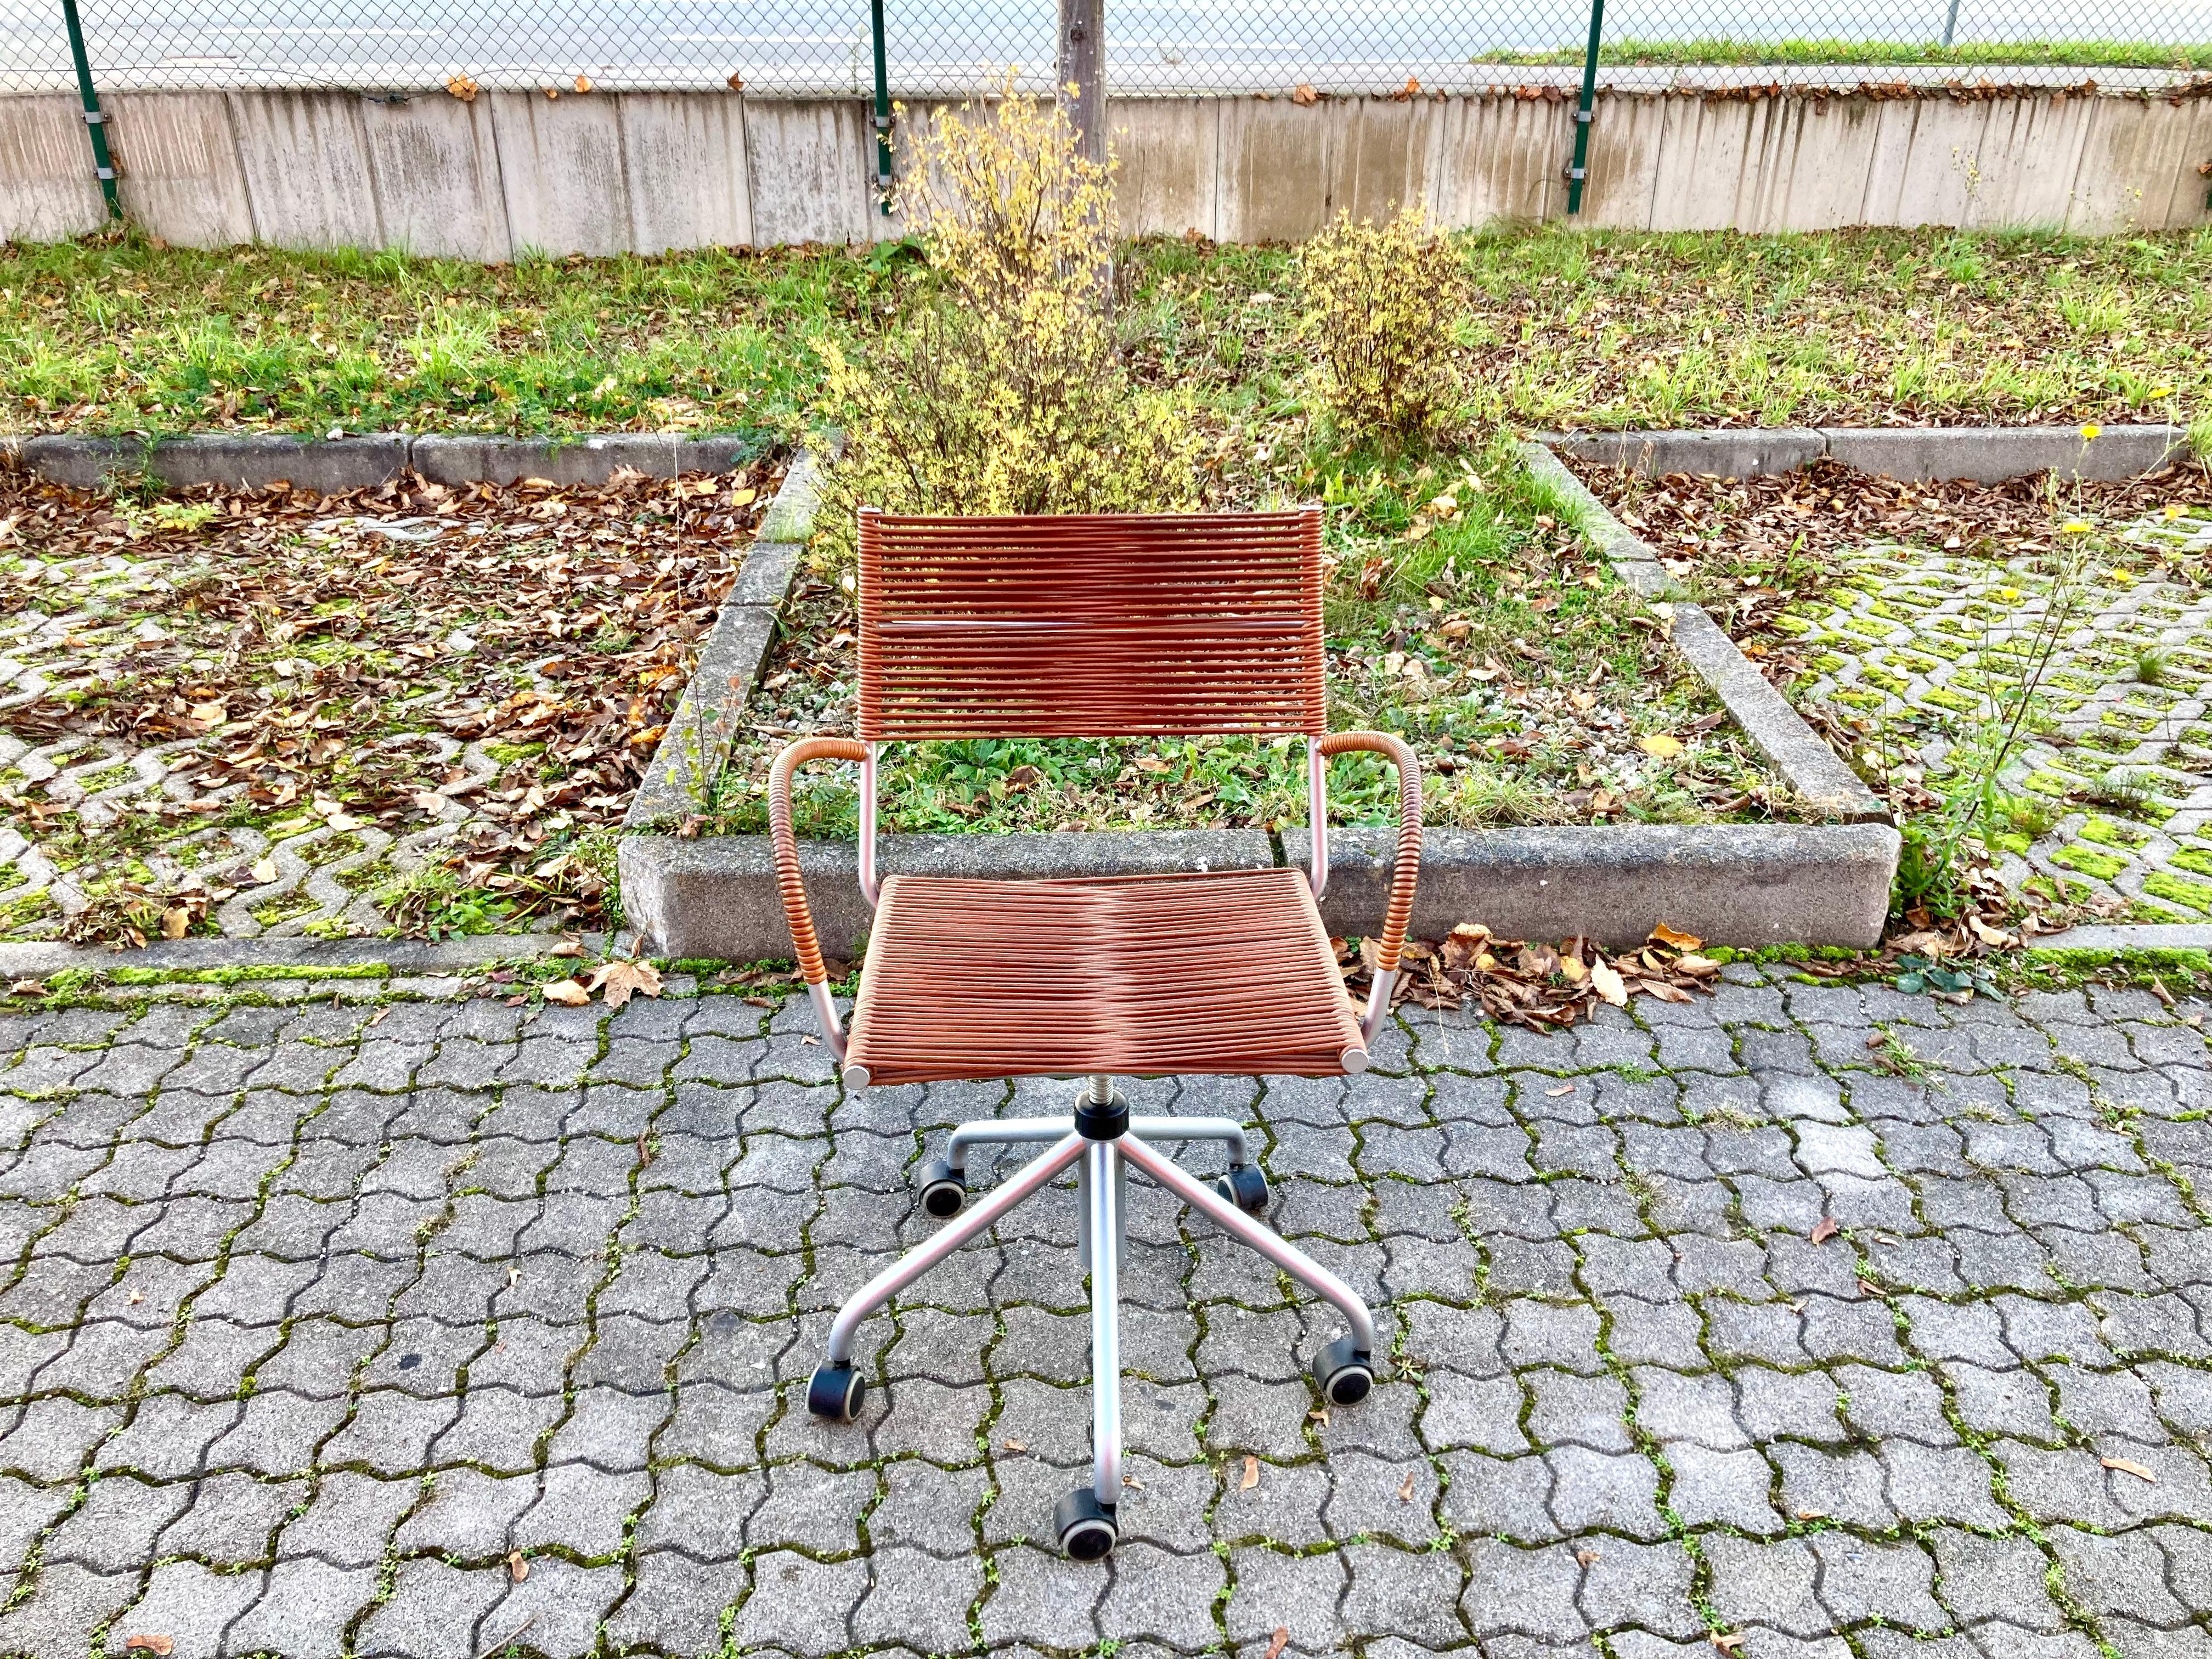 Ce fauteuil pivotant au design italien a été conçu par Tito Agnoli et est fabriqué par Bonacina.
Une chaise de bureau contemporaine confortable. Le modèle Miss B a été conçu en 1997.
Il avait un cadre en tube d'acier et était laqué en couleur